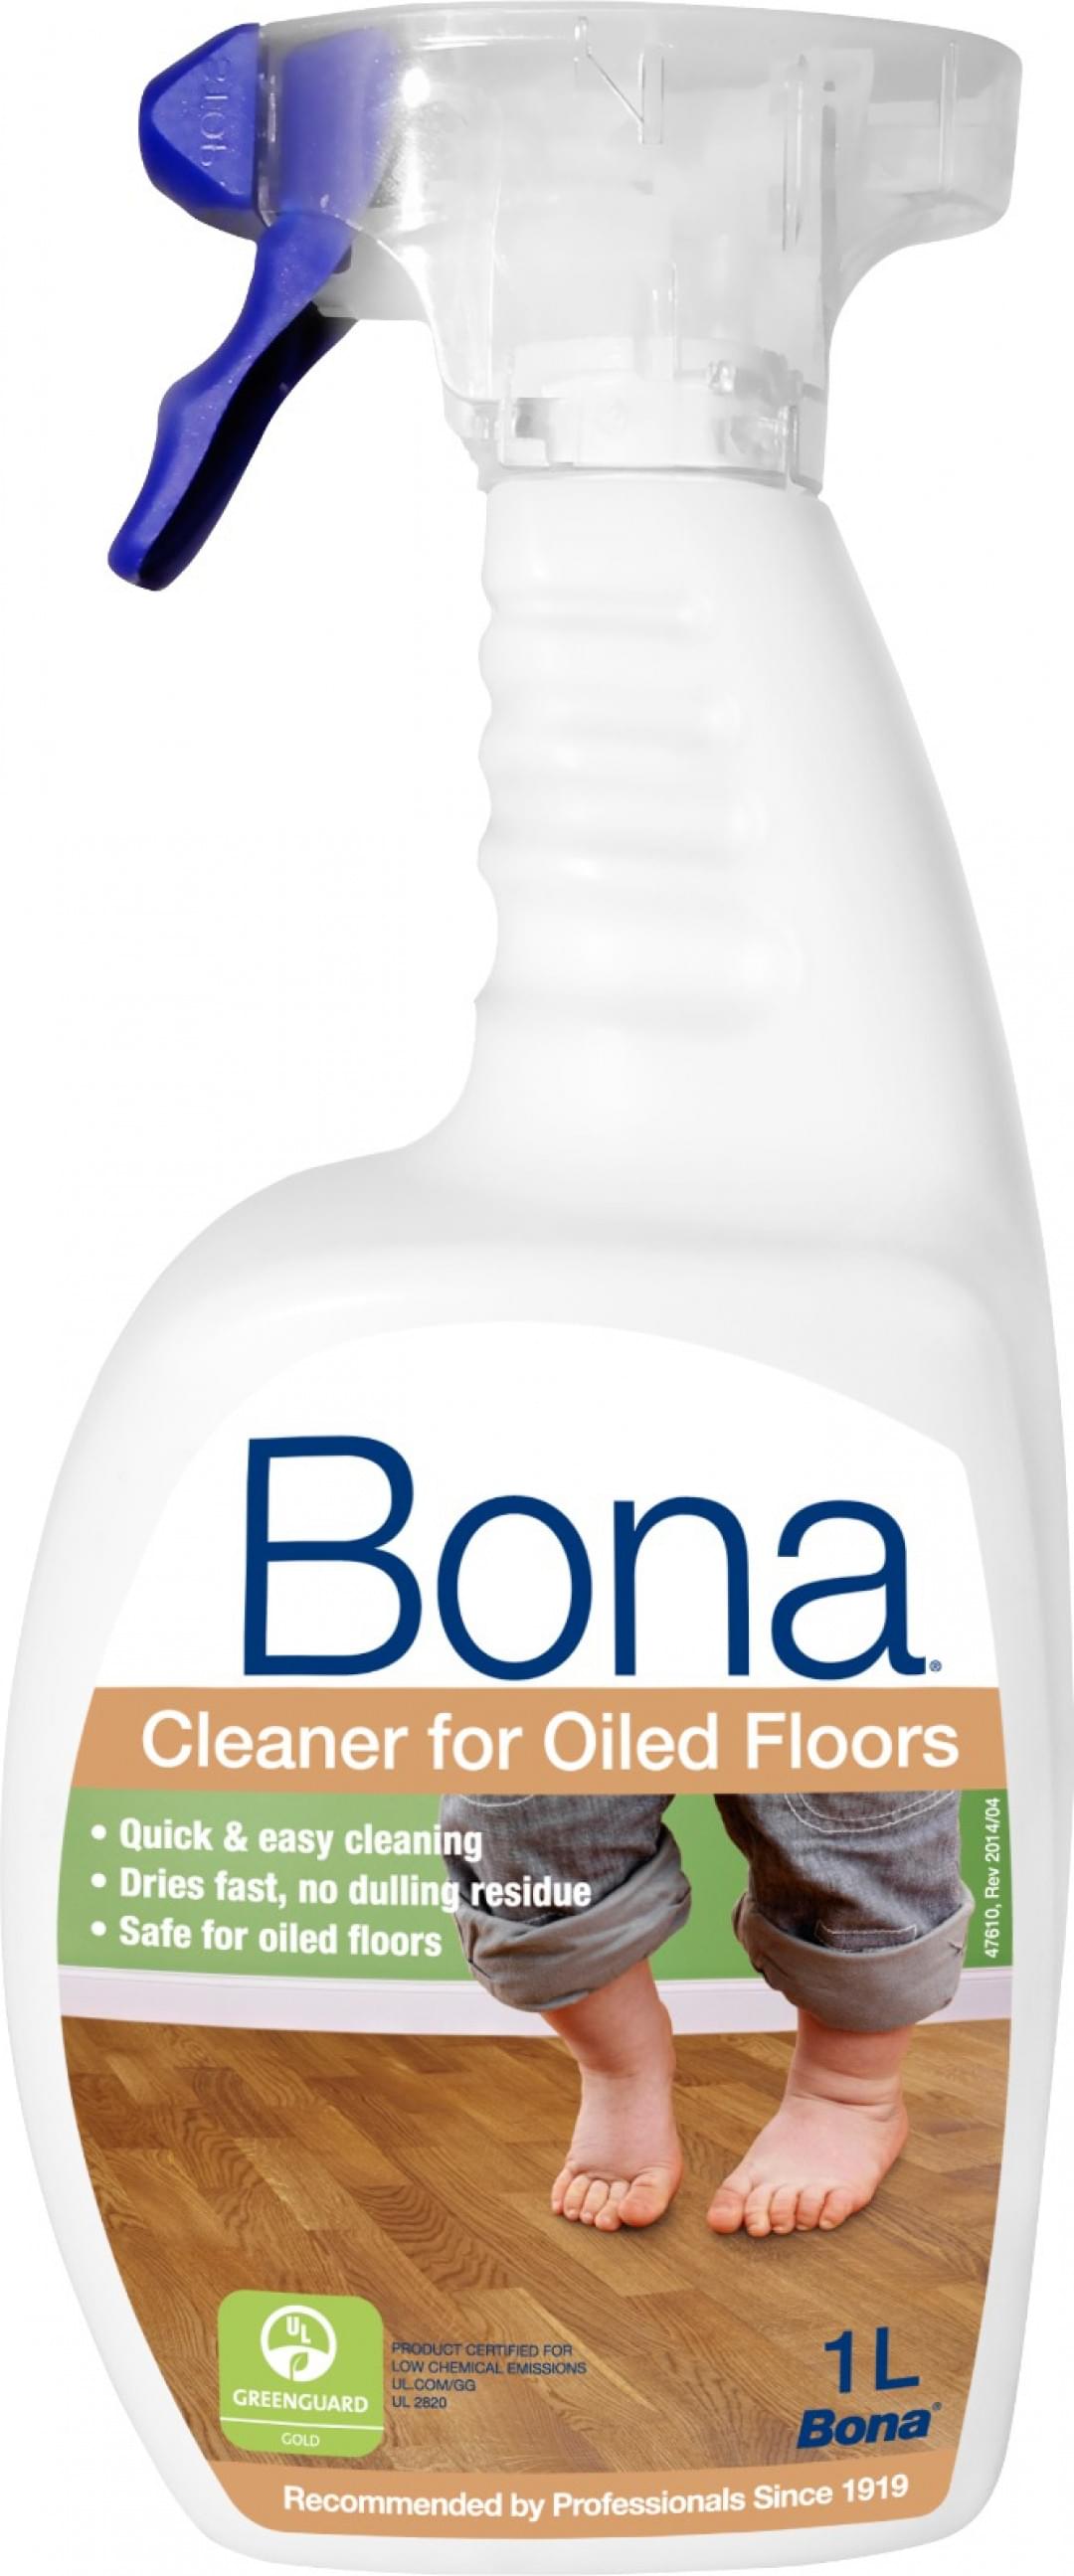 Cleaner for Oiled Floors from Bona